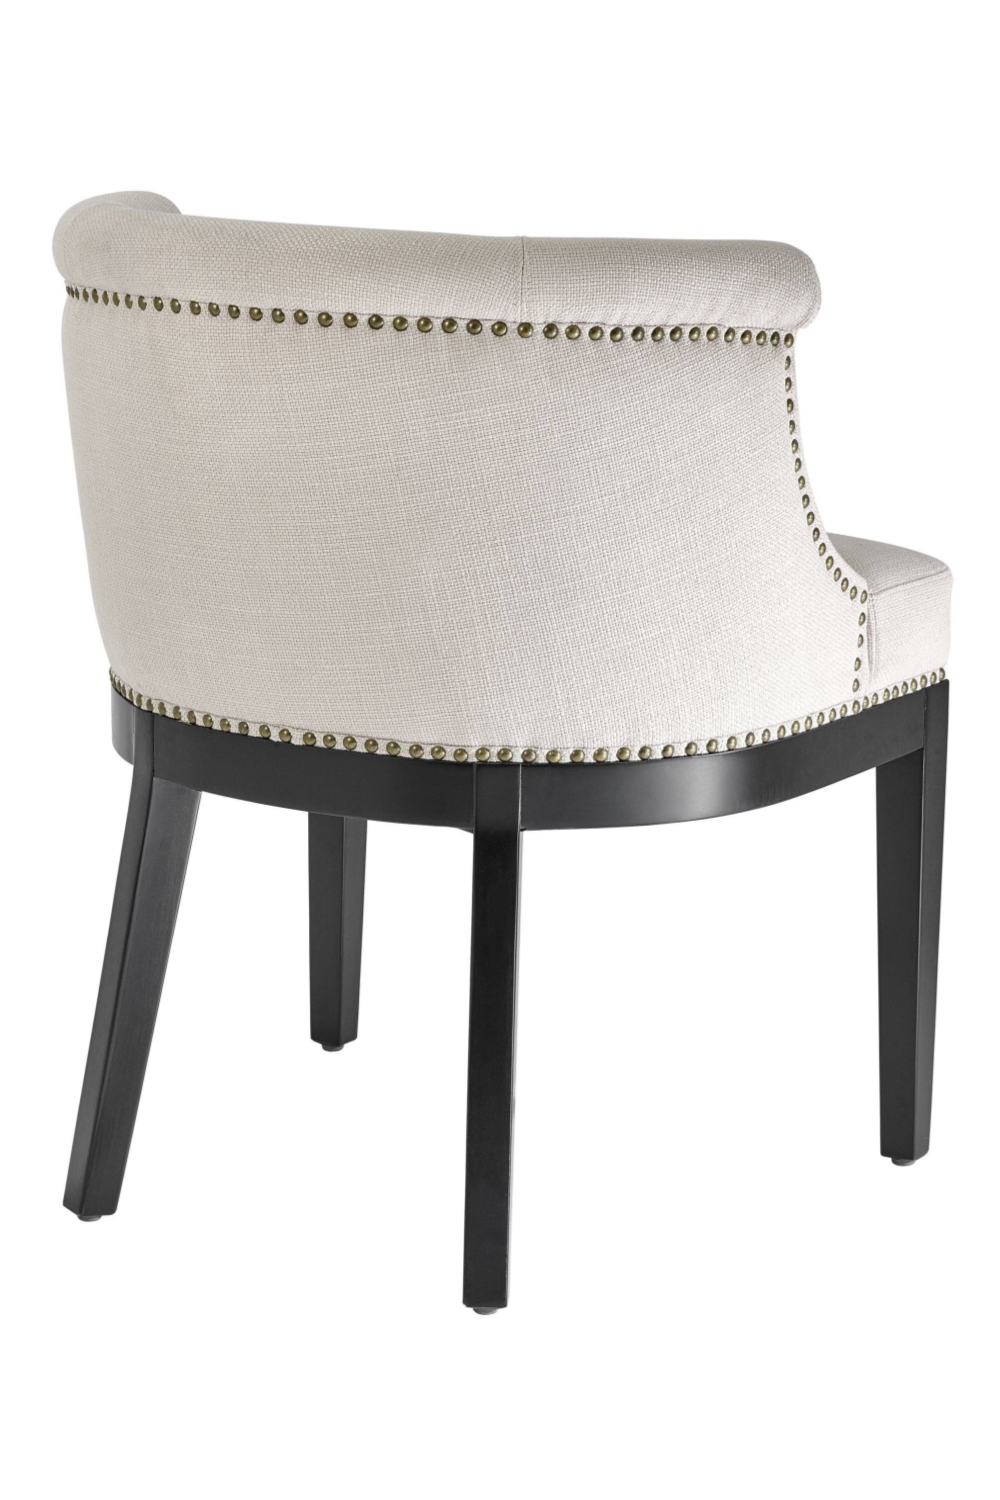 White Dining Chair | Eichholtz Boca Grande | Oroa.com